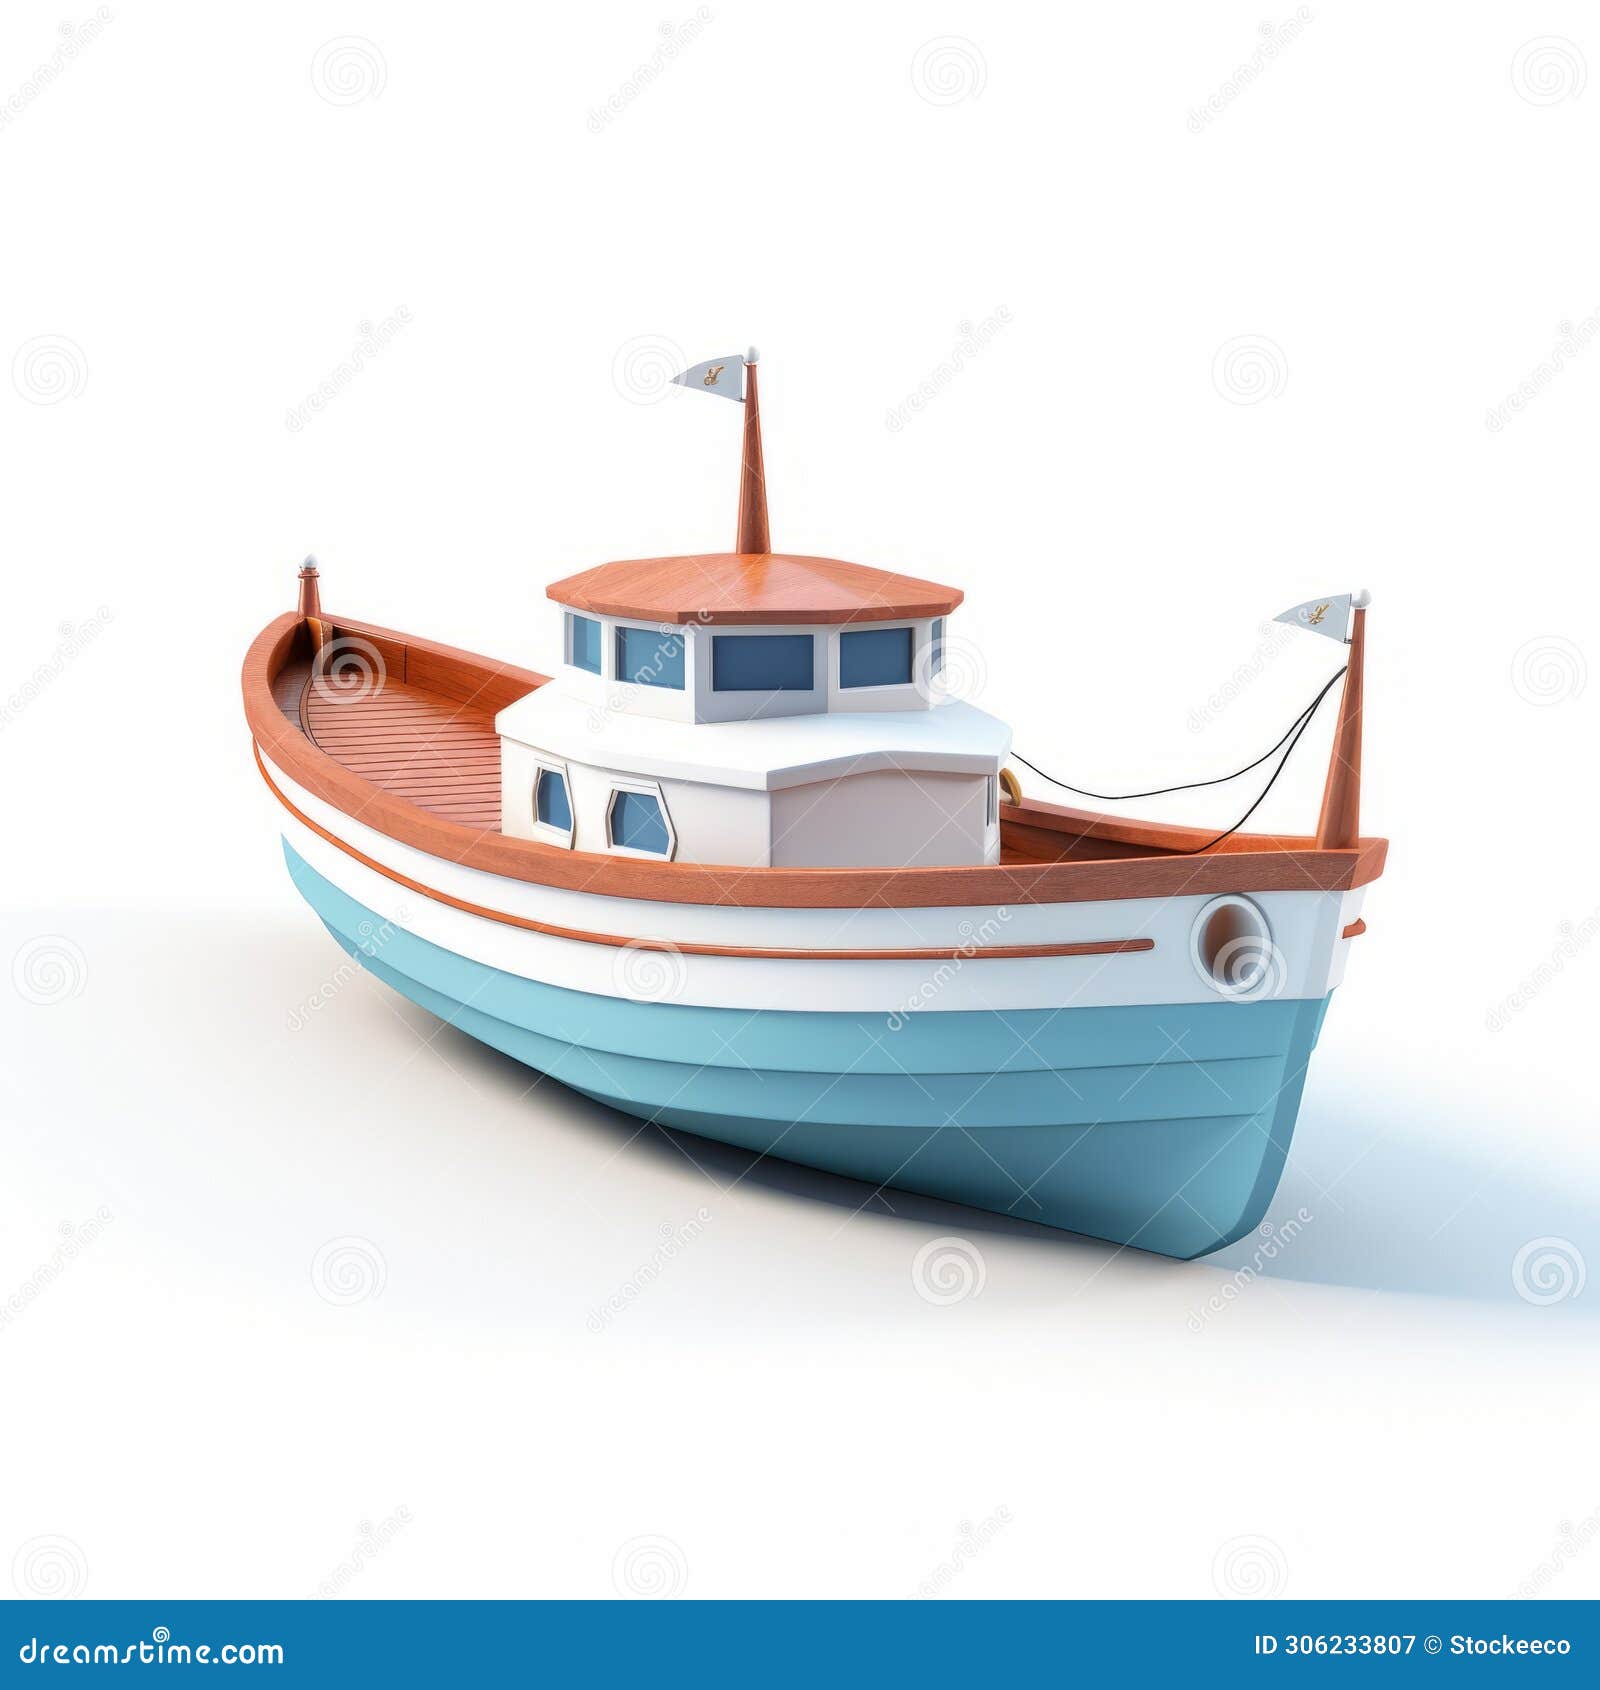 Cartoon Boat 3d Model - Royalty Free Vector Art Stock Illustration